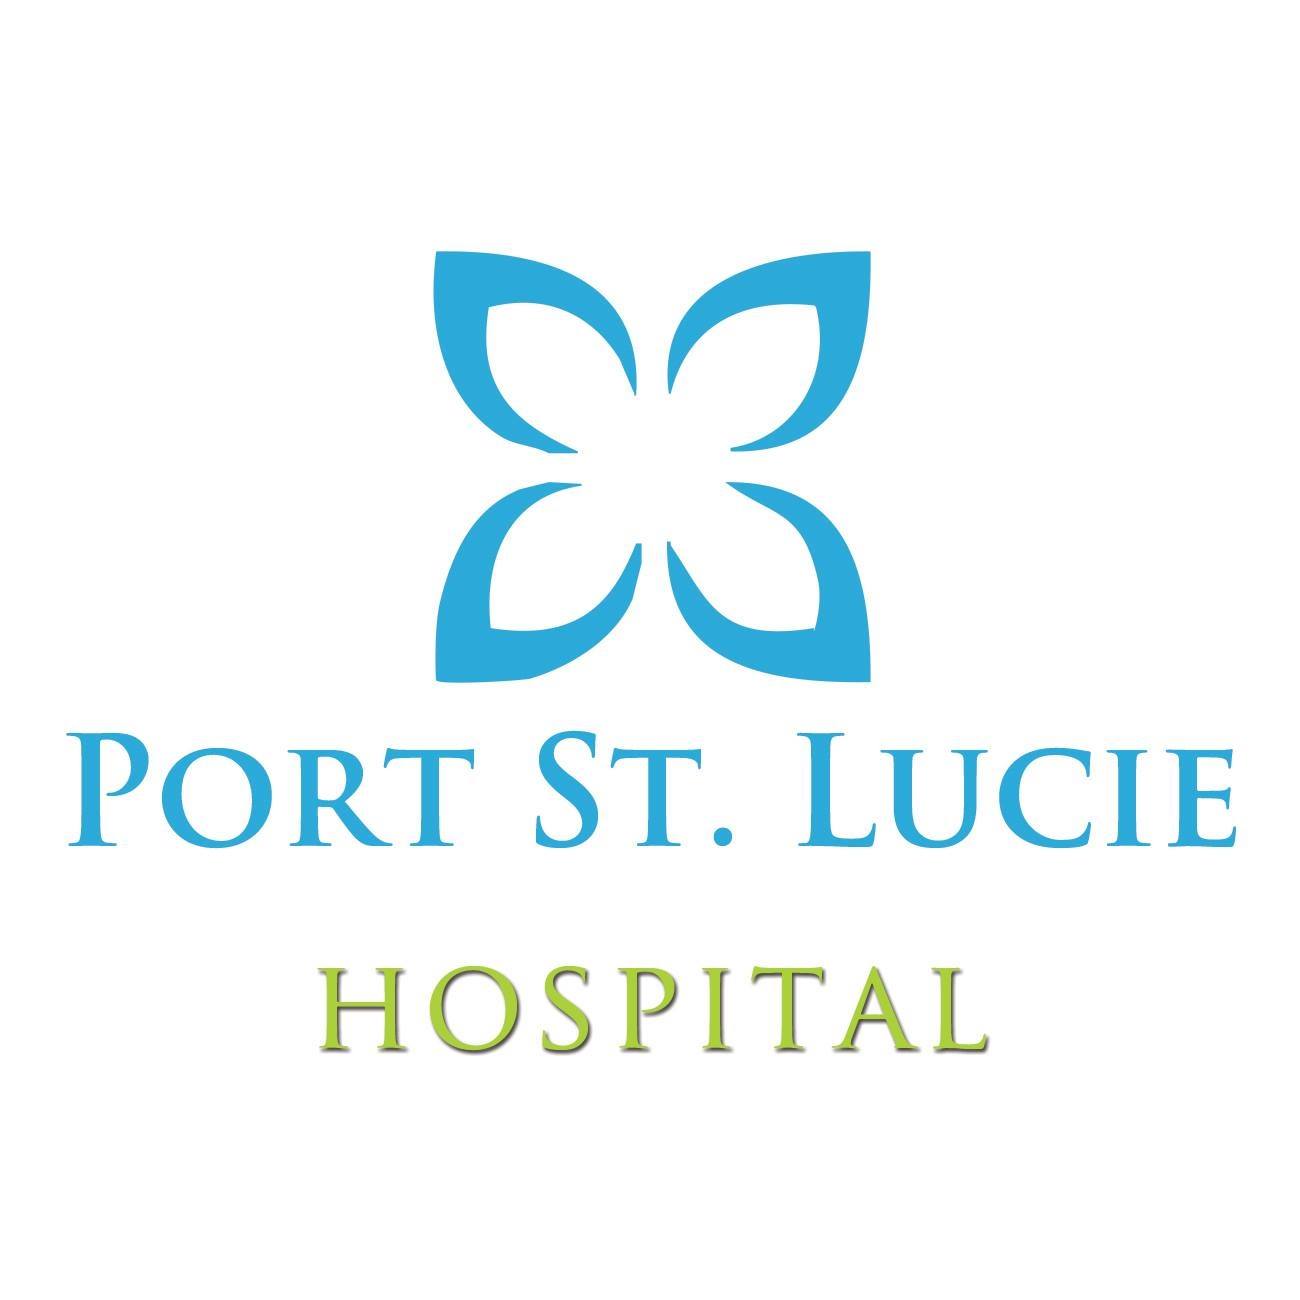 Port Saint Lucie Hospital